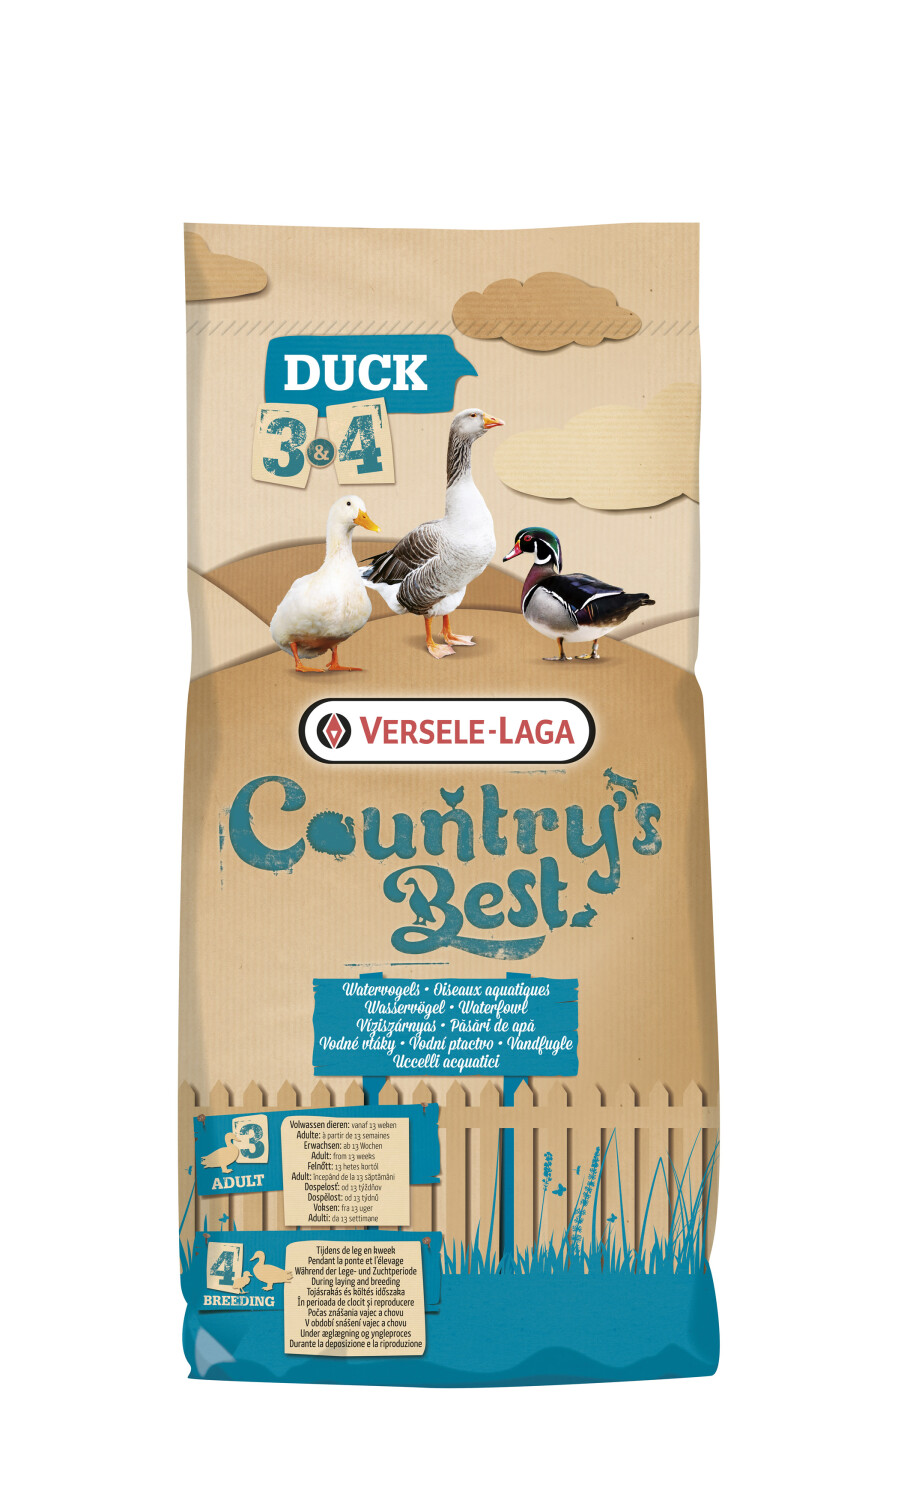 Afbeelding Versele-Laga Country's Best Duck 3 Pellet - 20 kg door Tuinadvies.be